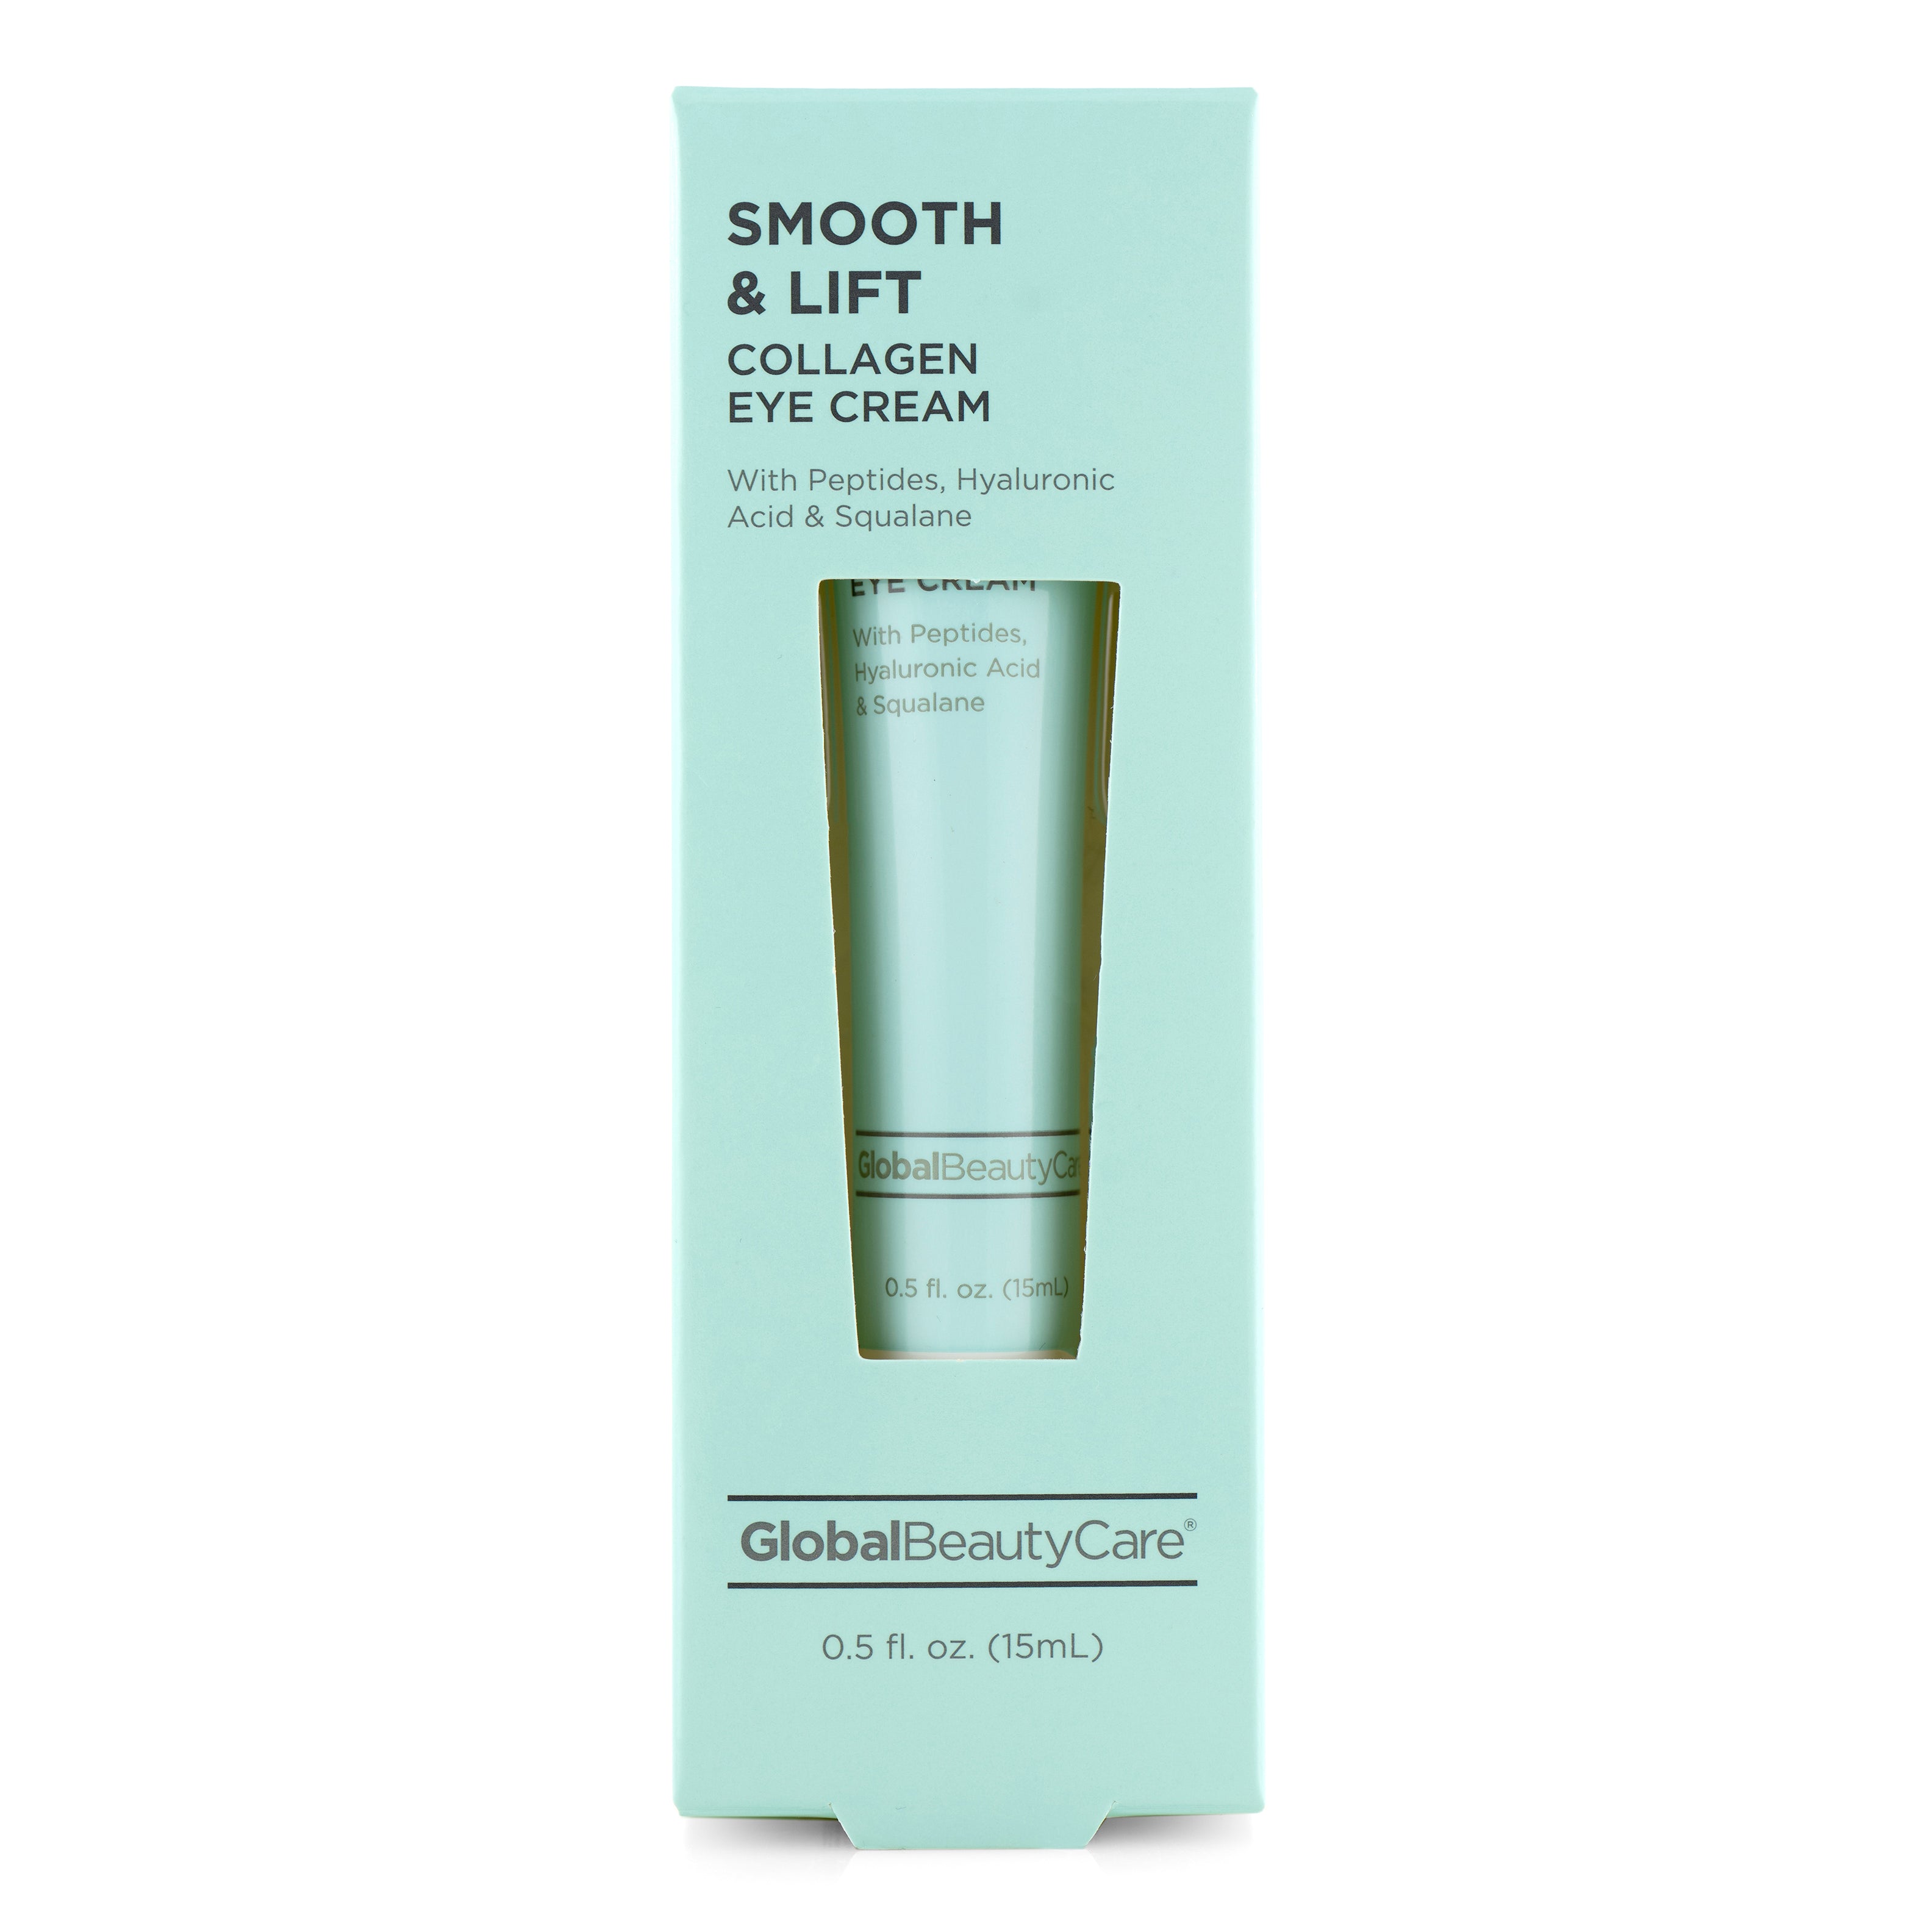 Smooth & Lift Collagen Eye Cream